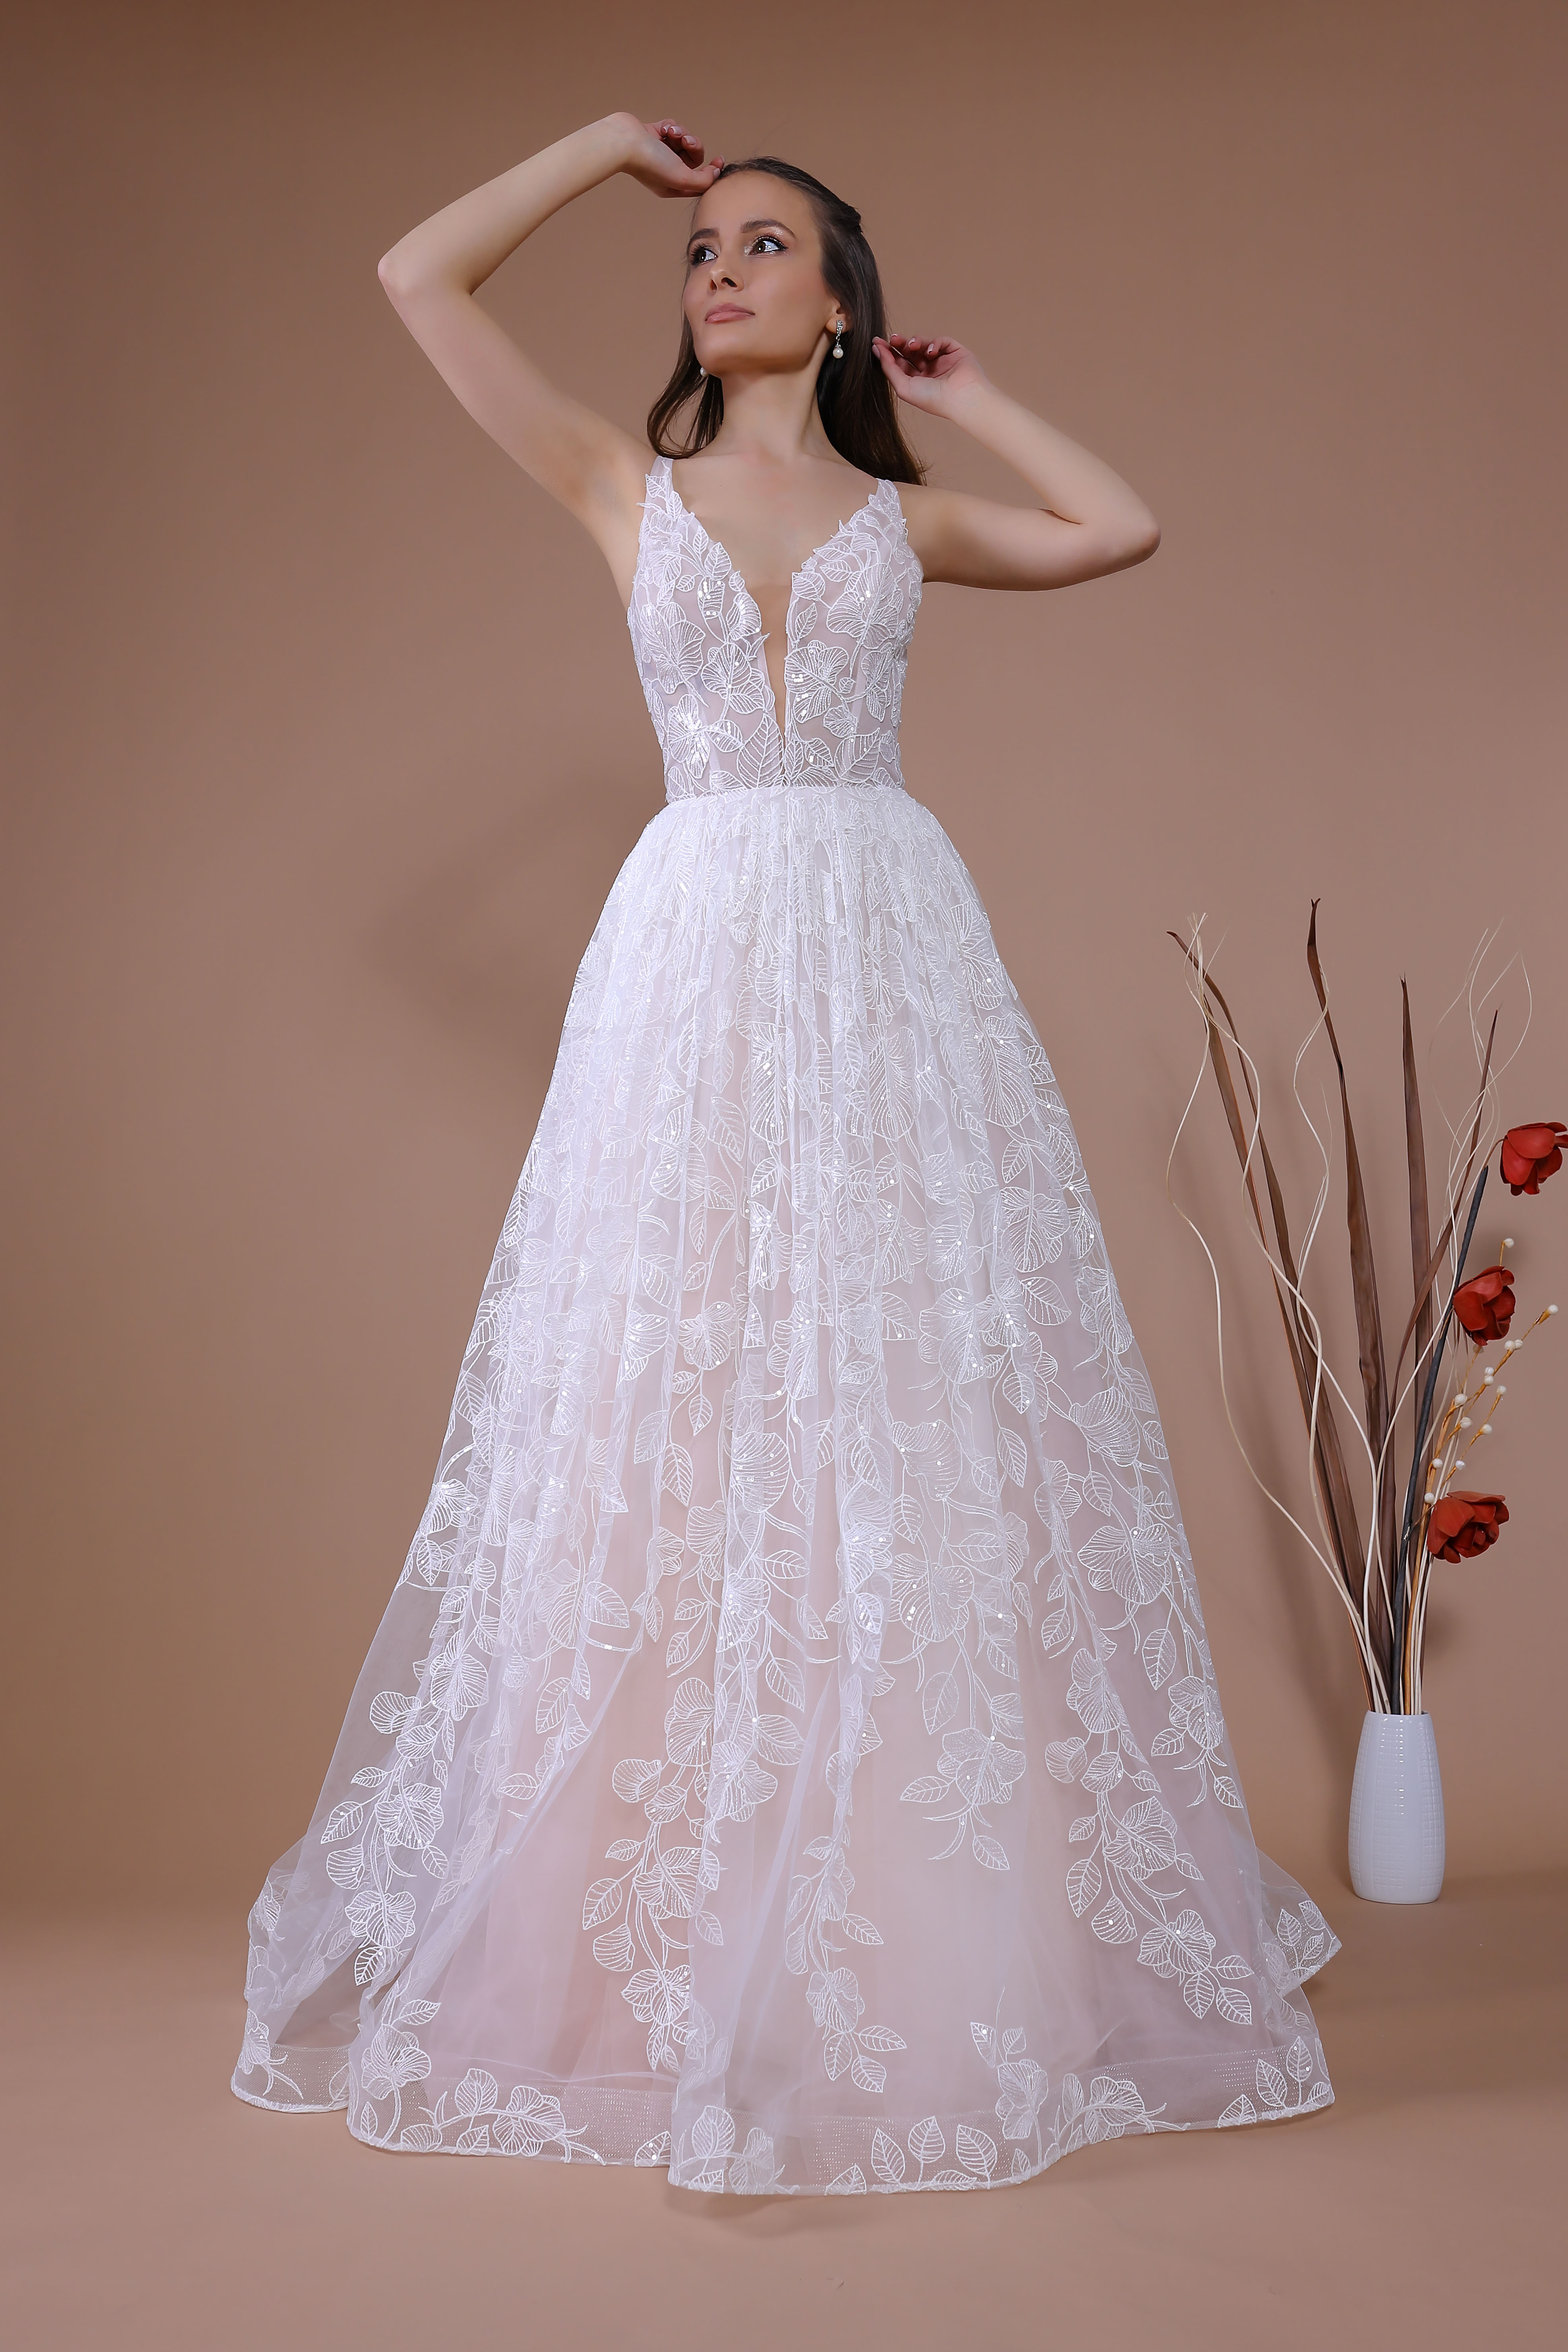 Schantal Brautkleid aus der Kollektion „Traum“, Modell 14091.